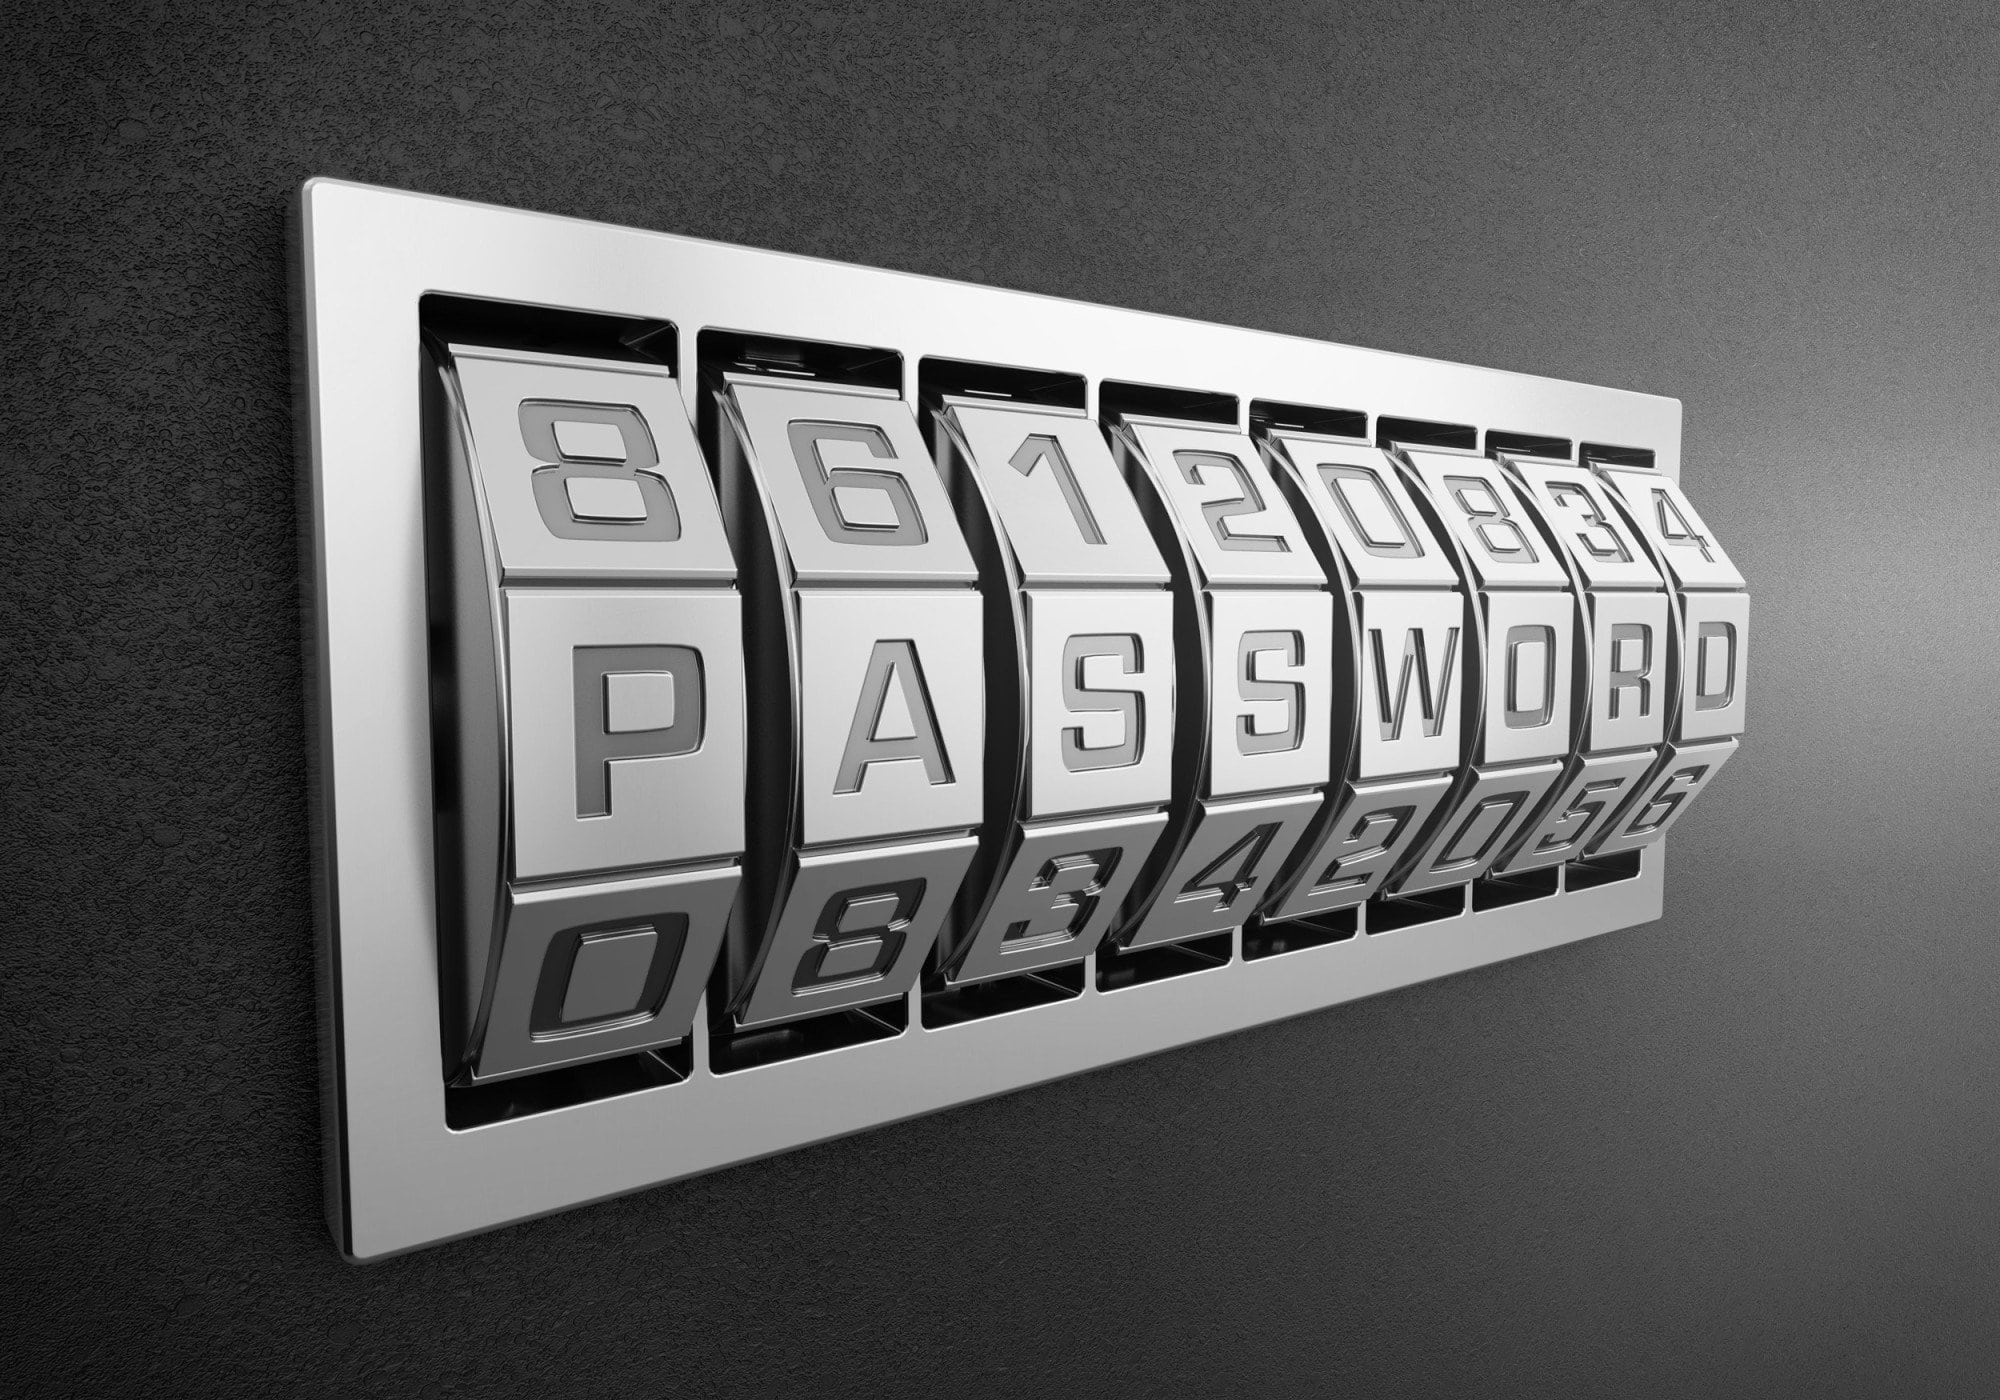 most common password